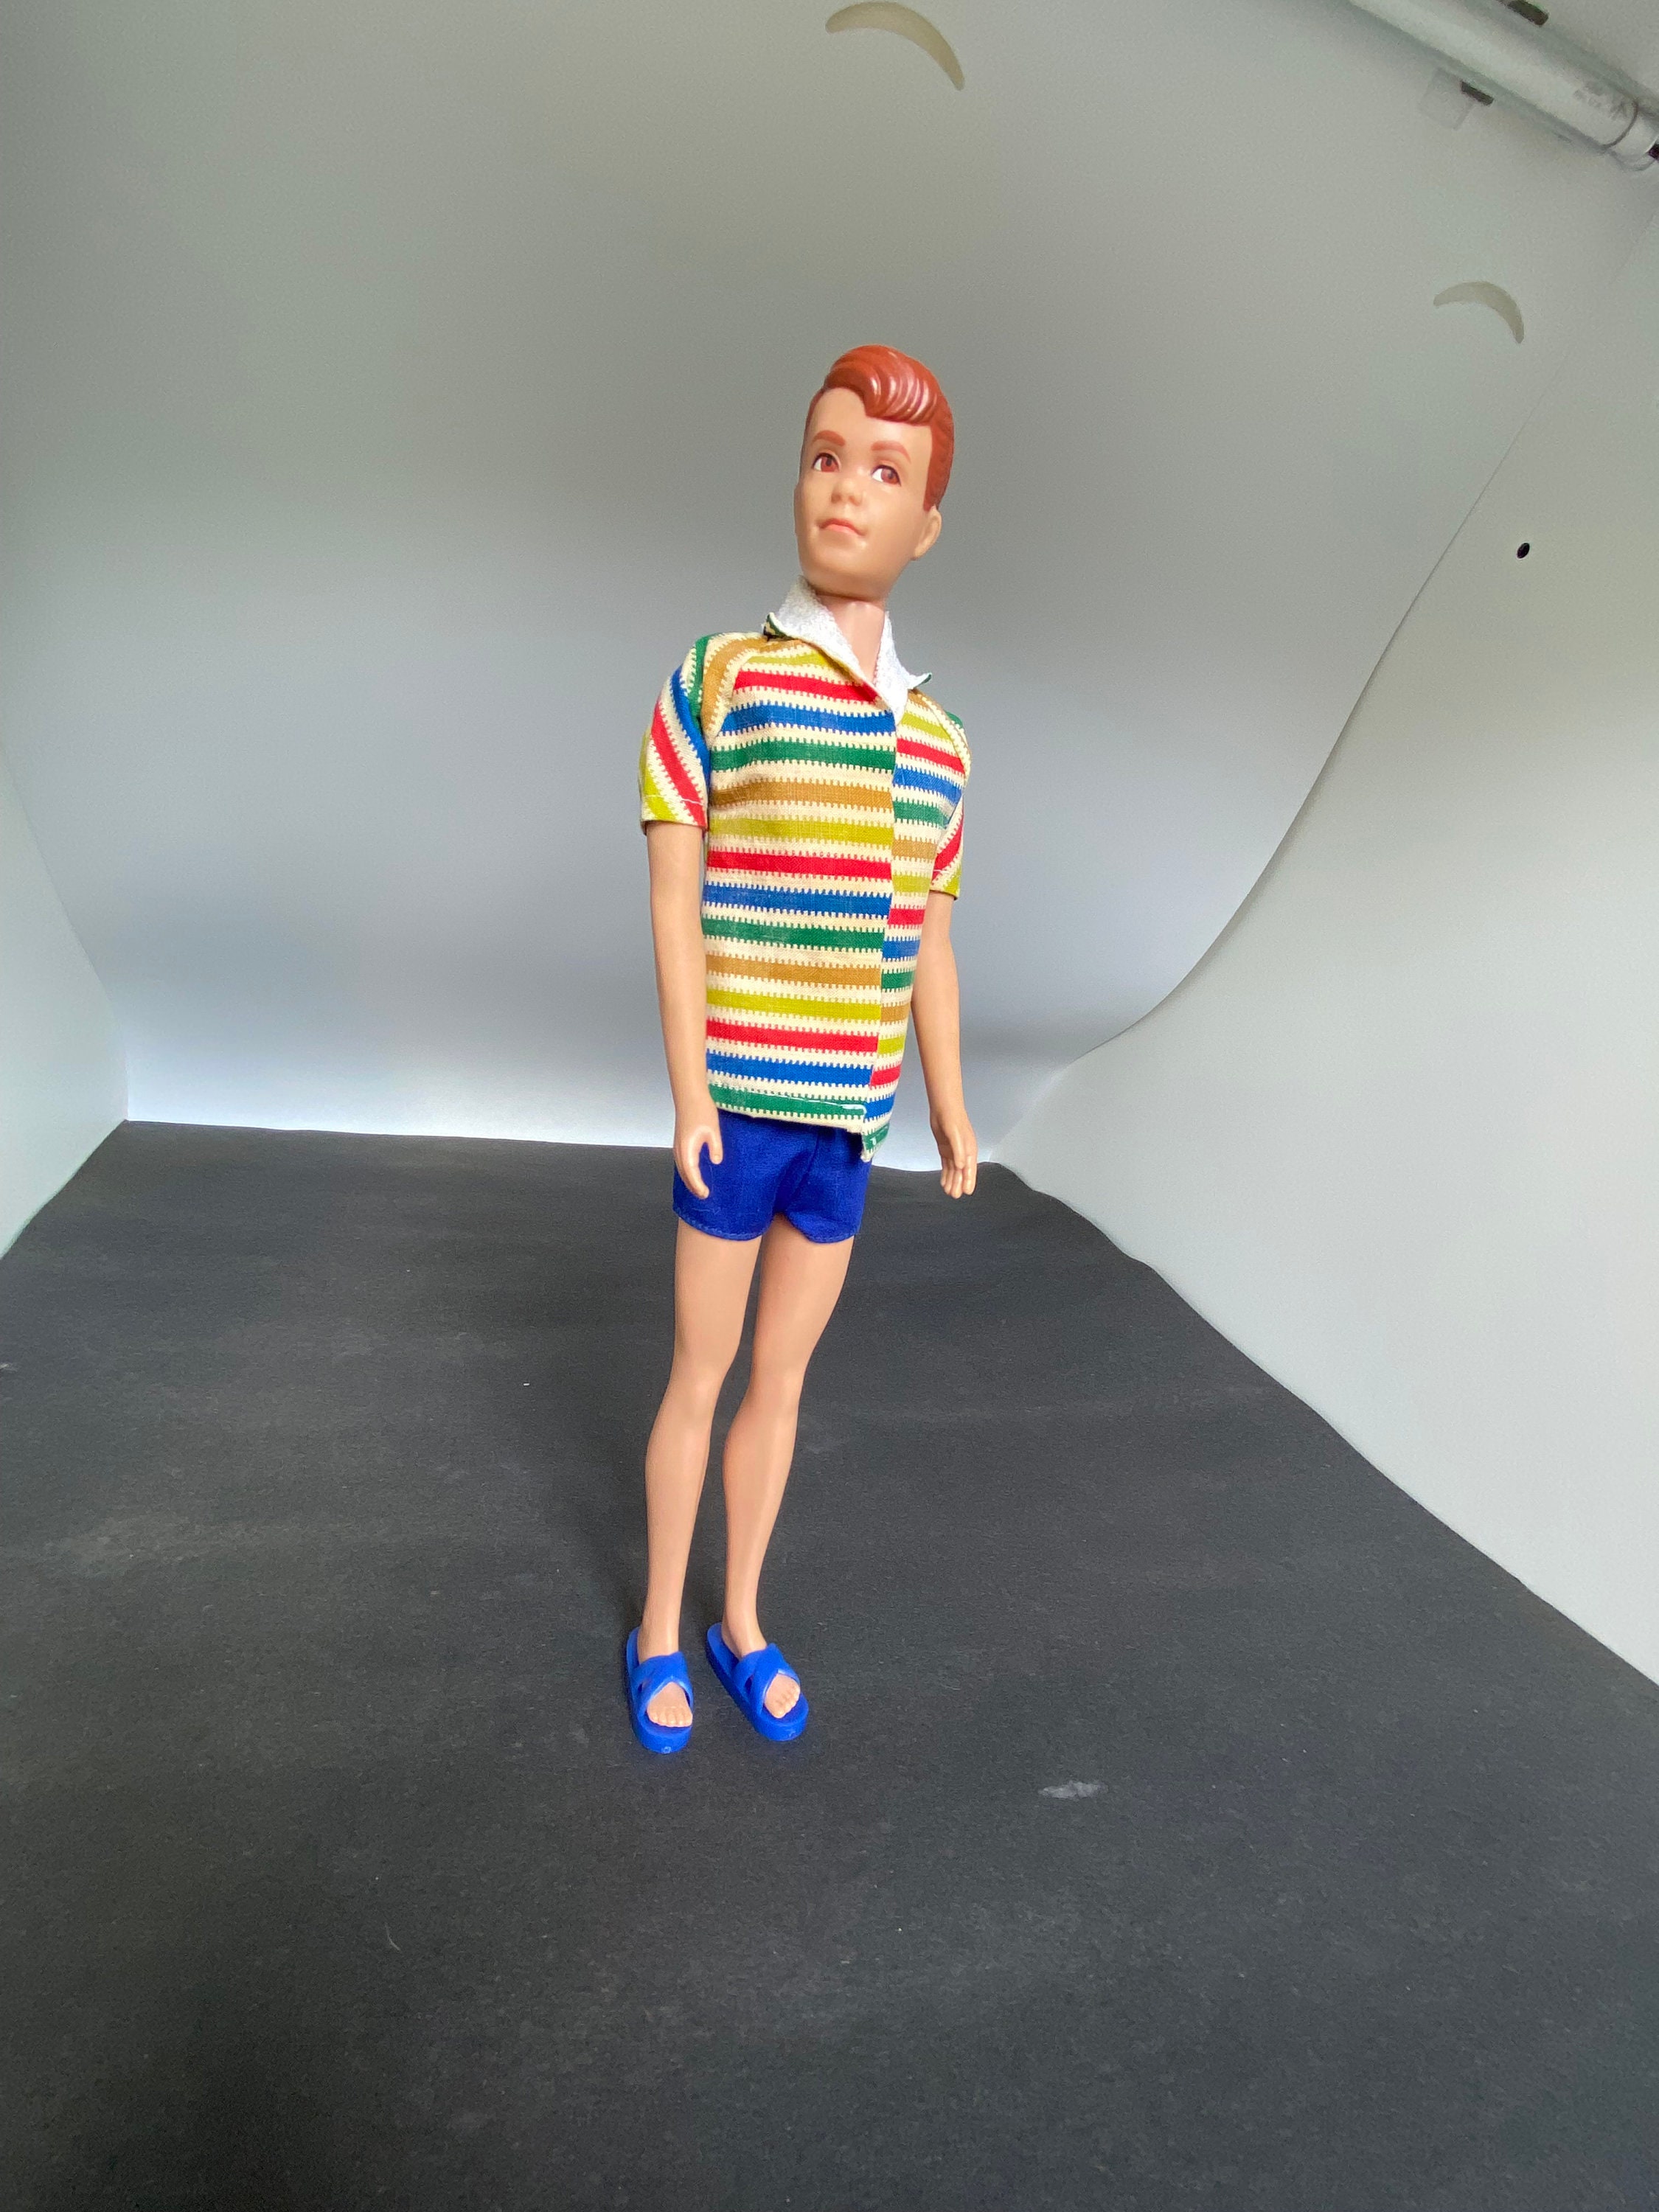 Vintage Ken, Ken Doll, Ken Figure, Barbie Friend, Barbie Doll